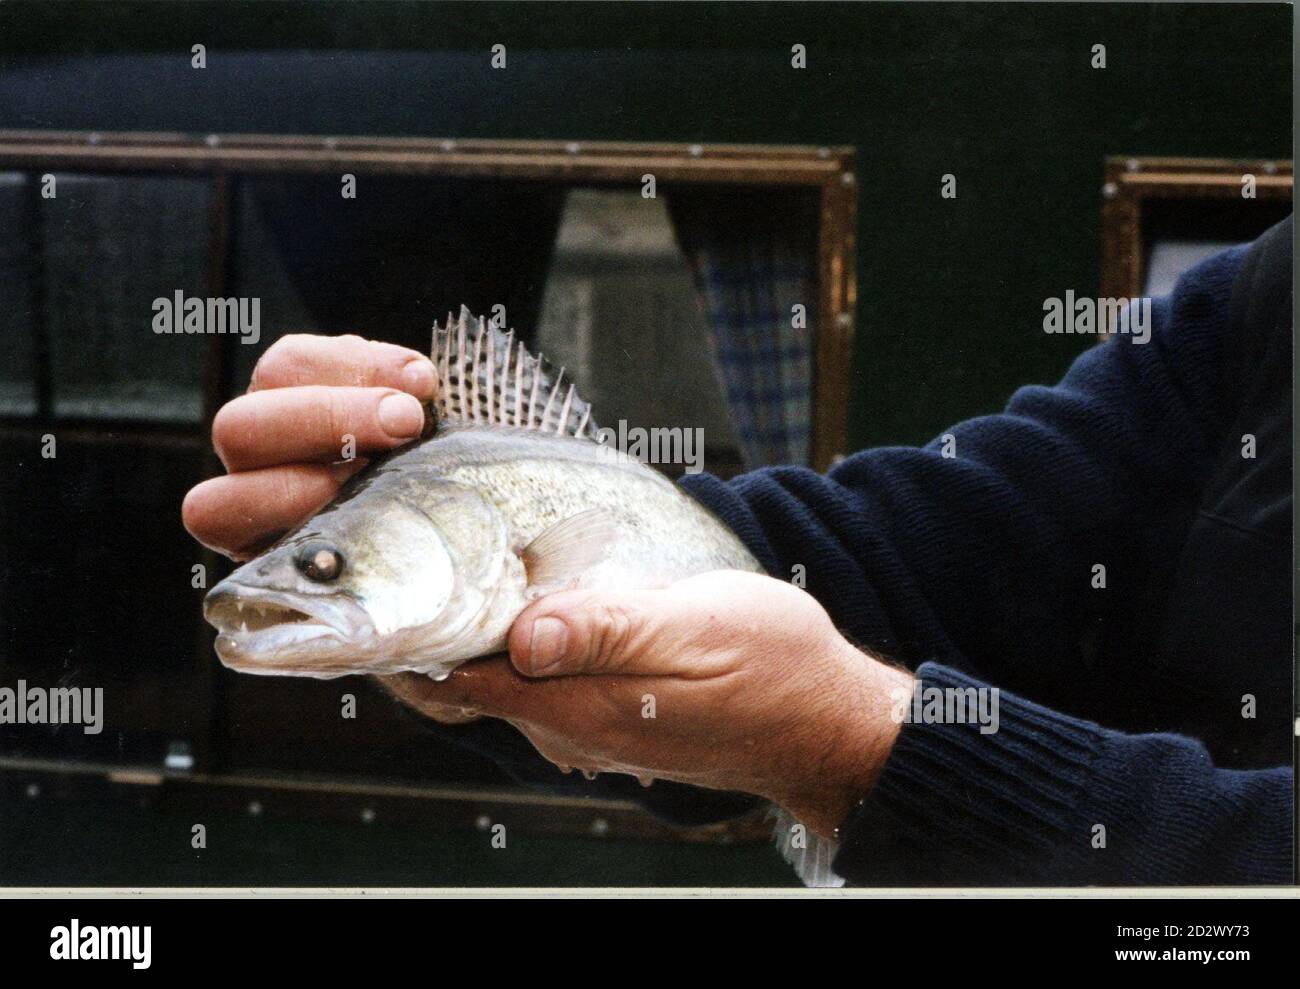 Undatierte Datei eines Fisches namens Zander. Eine Kampagne wurde heute (Dienstag) von British Waterways gestartet, um mehr Menschen zu ermutigen, die Raubfische zu essen. Zanders wurden illegal in die Kanäle eingeführt mehr als 30 Jahren von Angler und haben eine deutliche Vorliebe für einheimische britische Fische in dem Maße entwickelt, zu einem ernsten Problem, daher die Kampagne. SIEHE PA-GESCHICHTE VERBRAUCHERFISCHE. Stockfoto